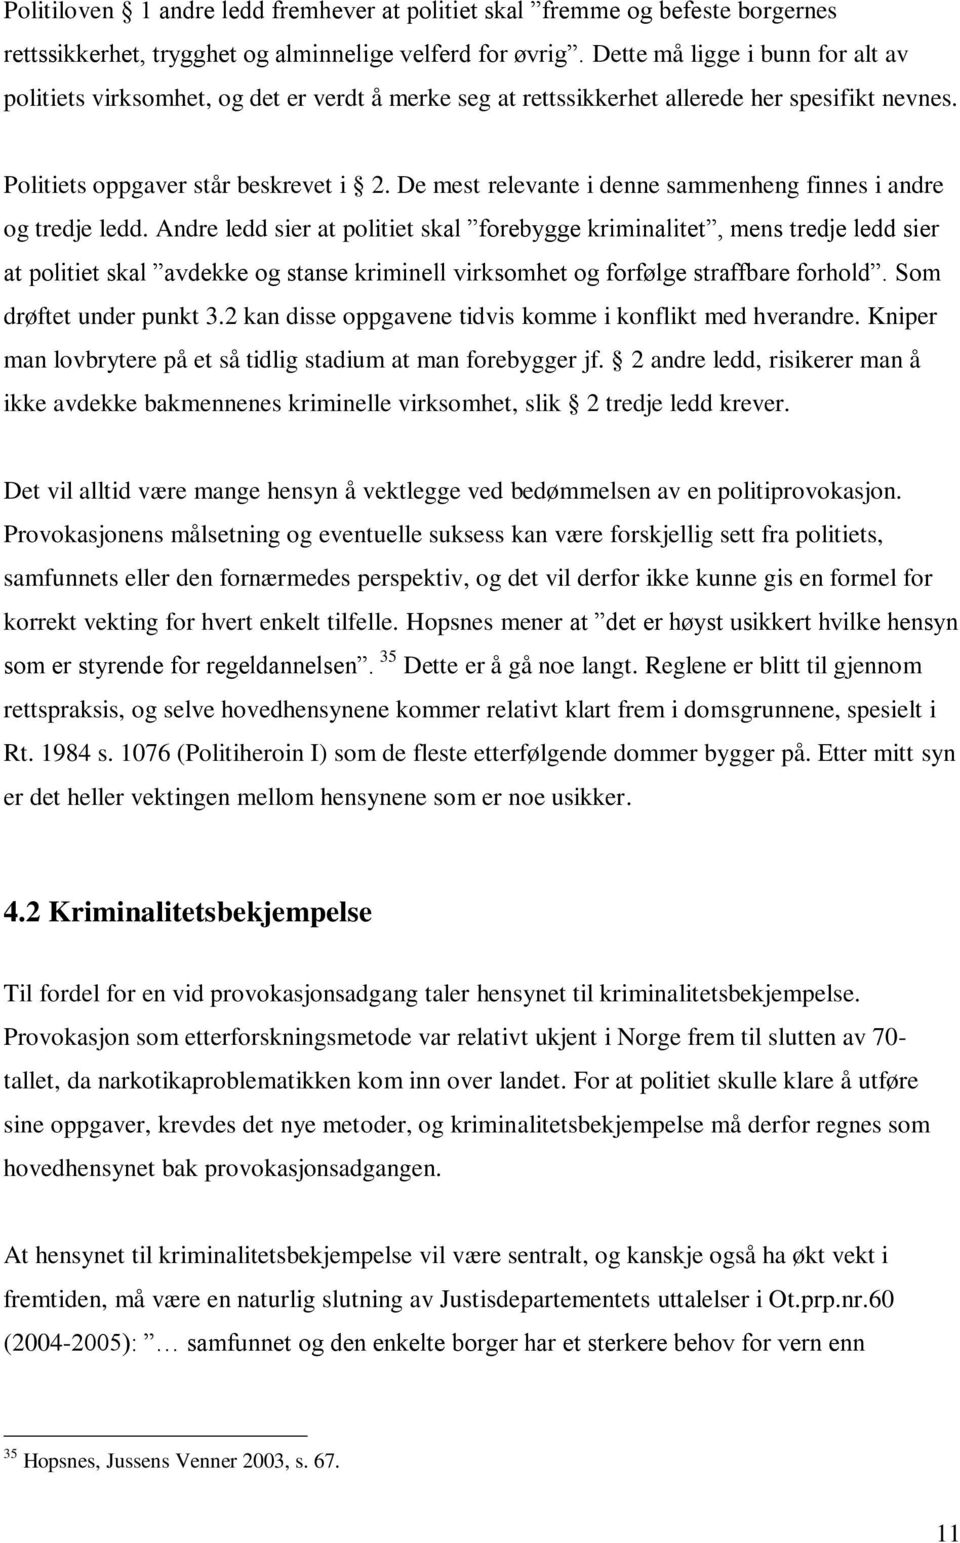 Politiprovokasjon som etterforskningsmetode og straffrihetsgrunn. av Sigurd  Eggen - PDF Gratis nedlasting